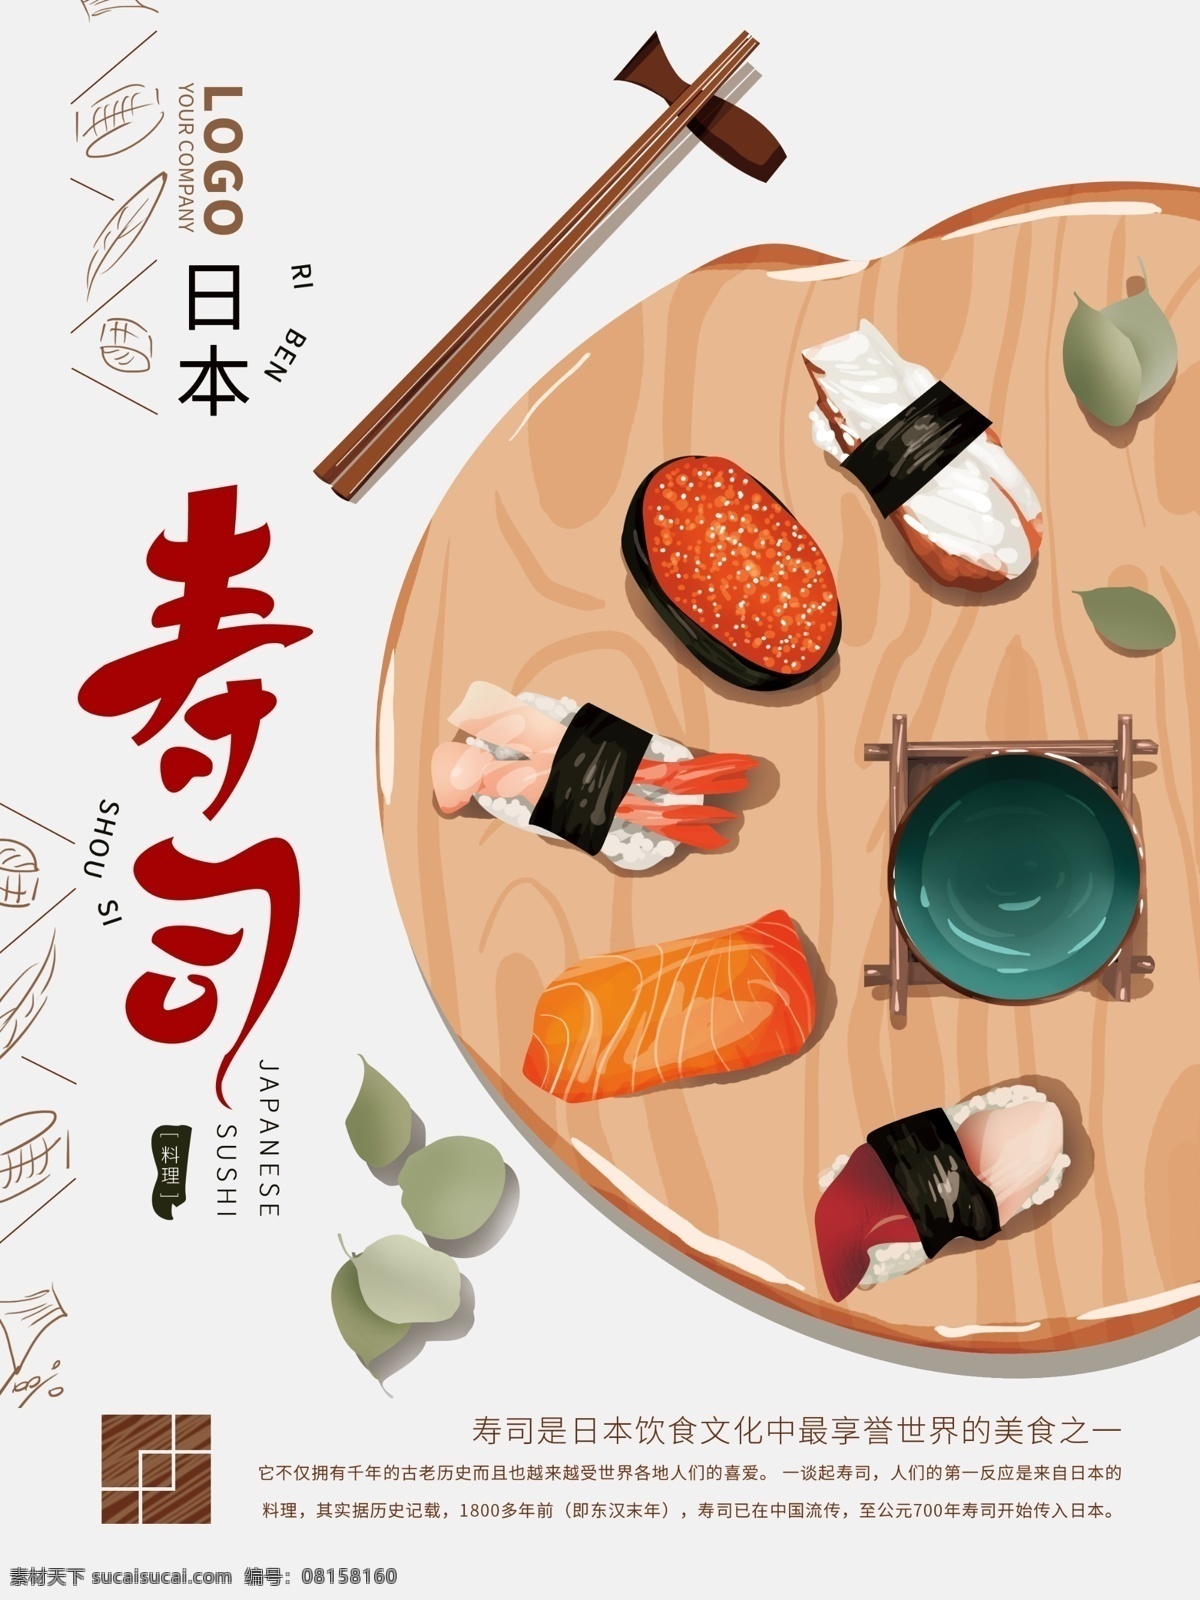 原创 手绘 日本 寿司 美食 海报 旅游 简约